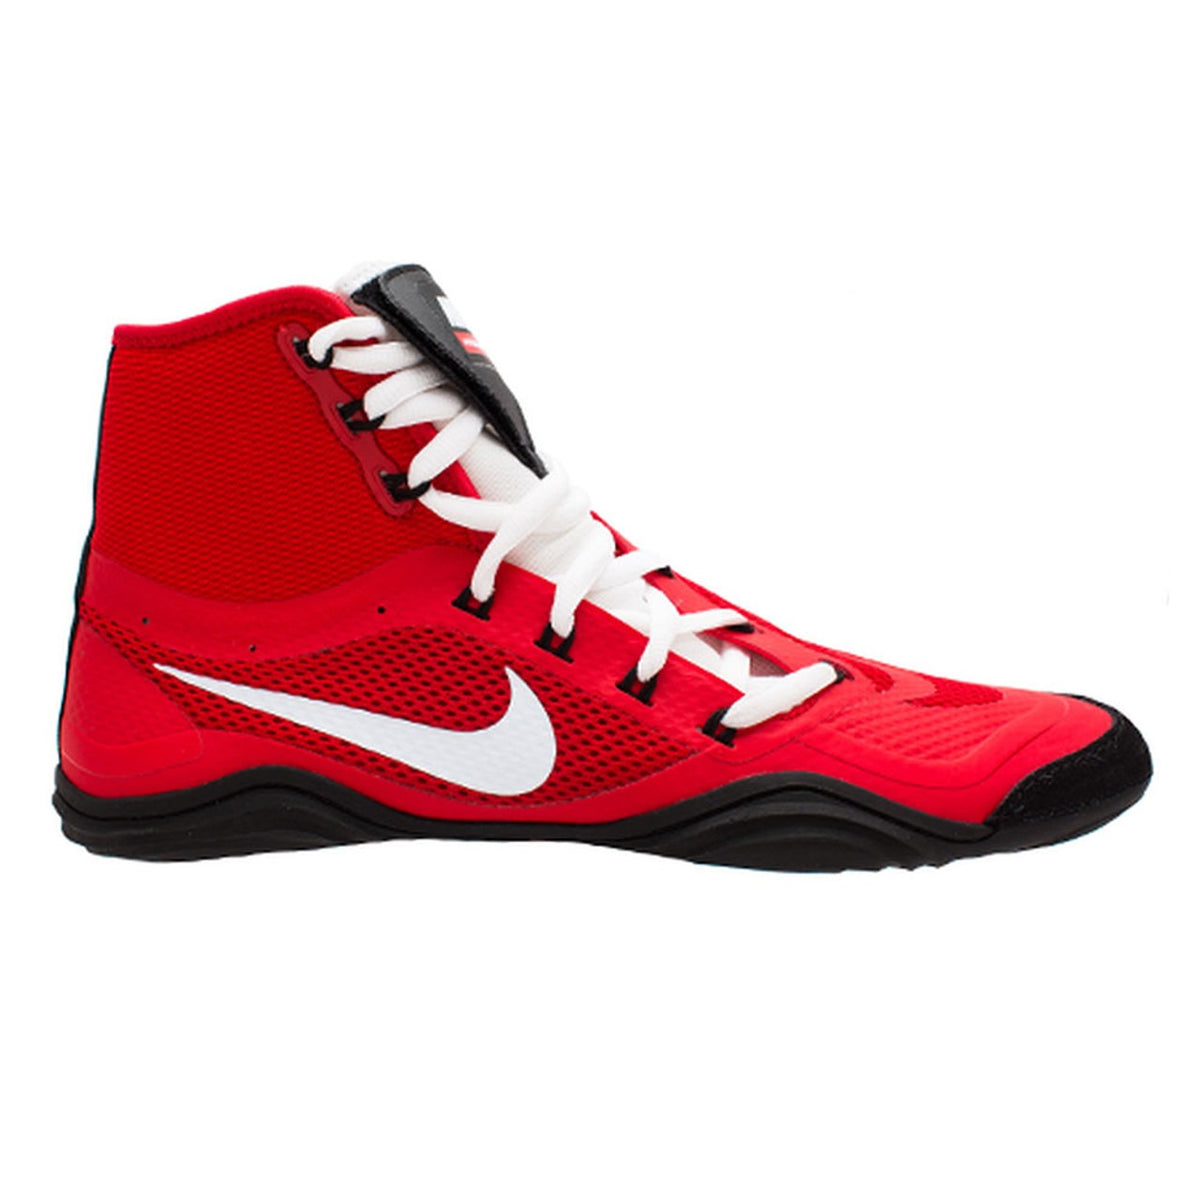 Chaussures de lutte Nike HYPERSWEEP LE. La chaussure de lutte professionnelle pour tous les lutteurs ambitieux. Dotée de la technologie la plus avancée, la Nike Hypersweep vous offre une grande adhérence sur le tapis de lutte. A l'entraînement et en compétition. Ici dans la couleur rouge.